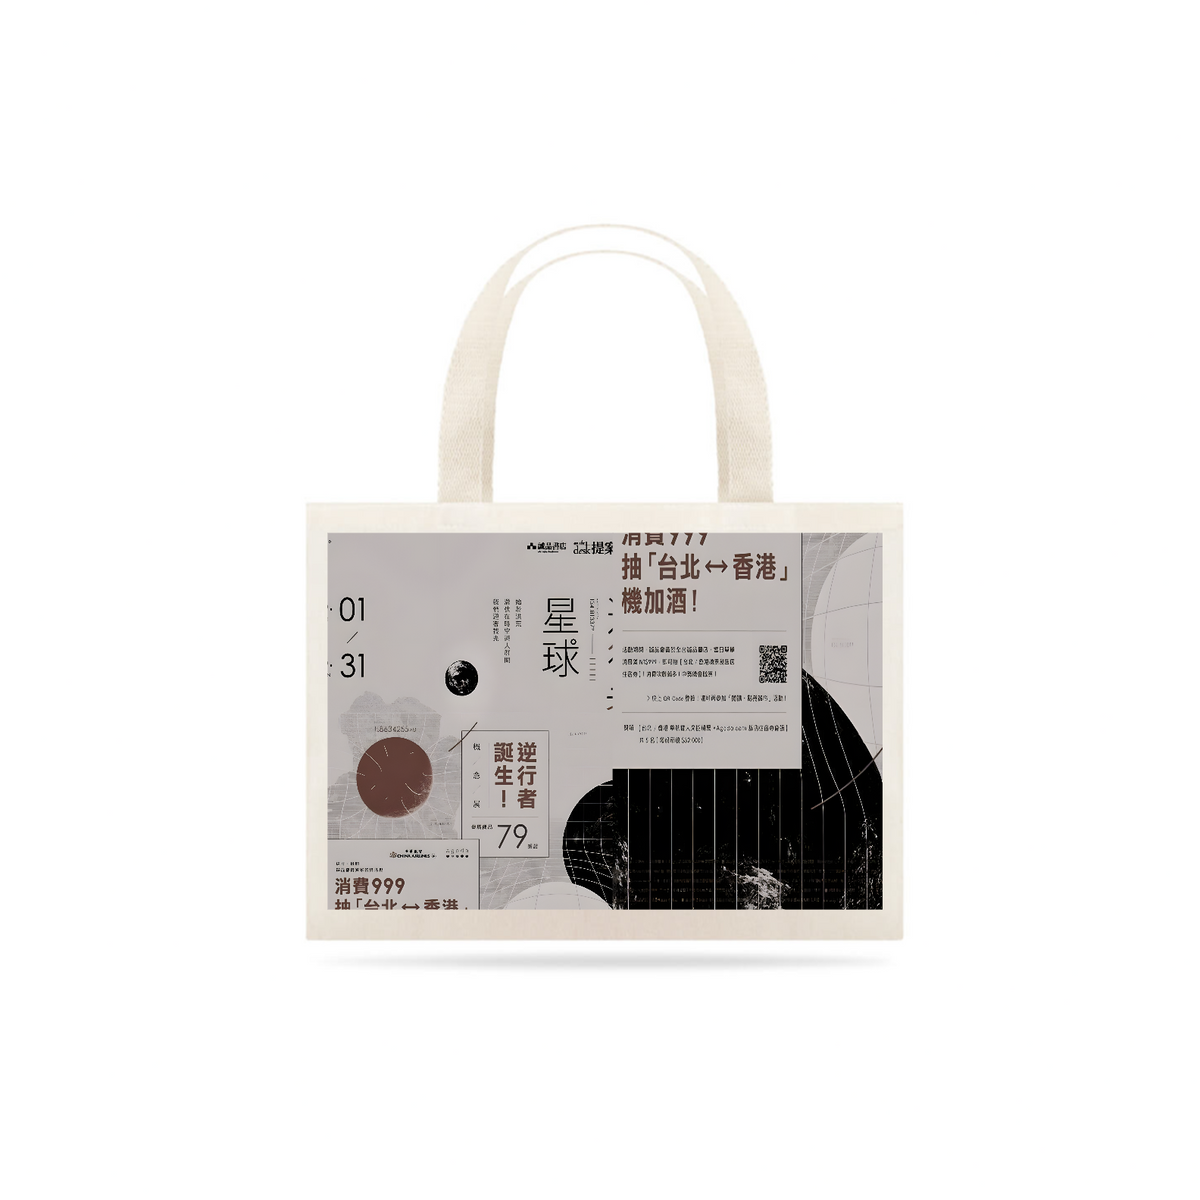 Nome do produto: Ecobag Aethestic Japonesa